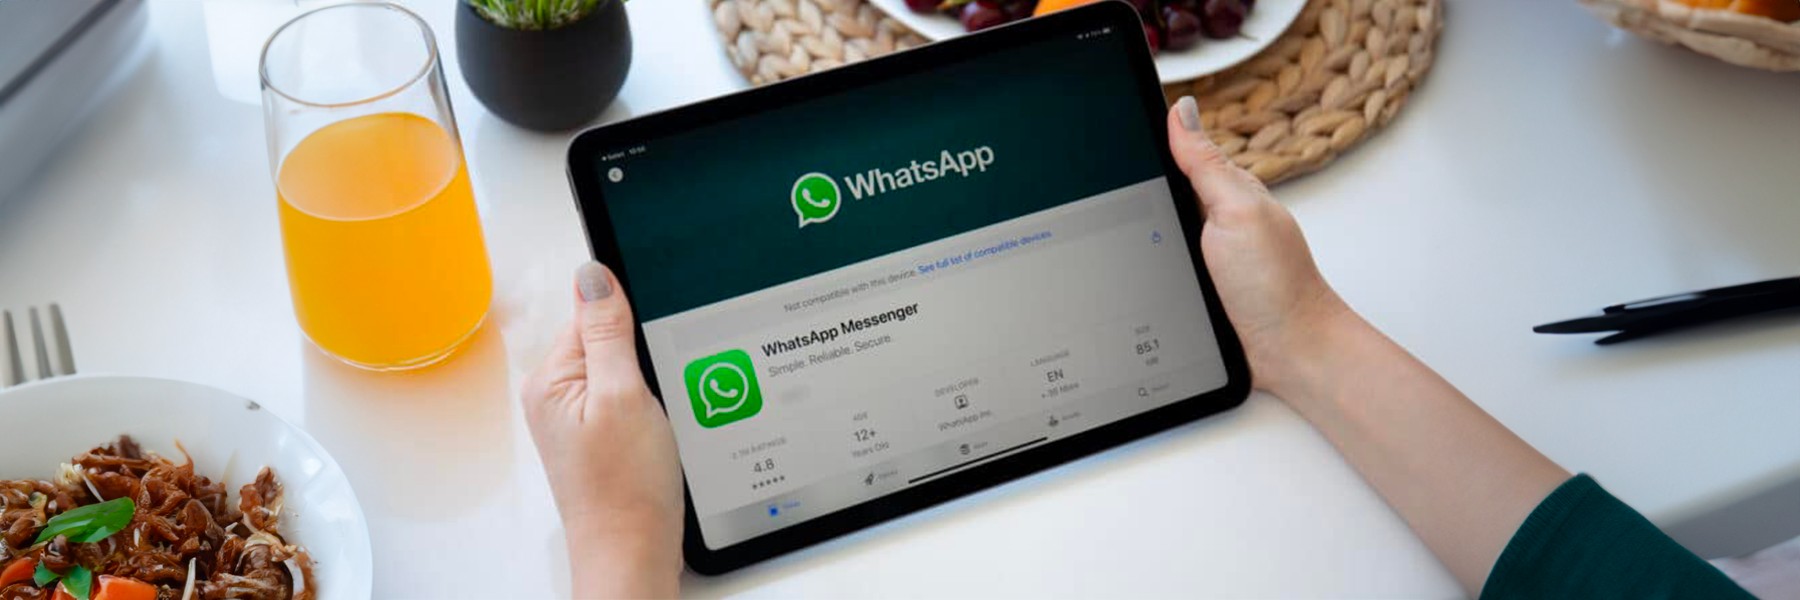 WhatsApp arriva finalmente anche su iPad: disponibile la prima beta nativa per iPadOS